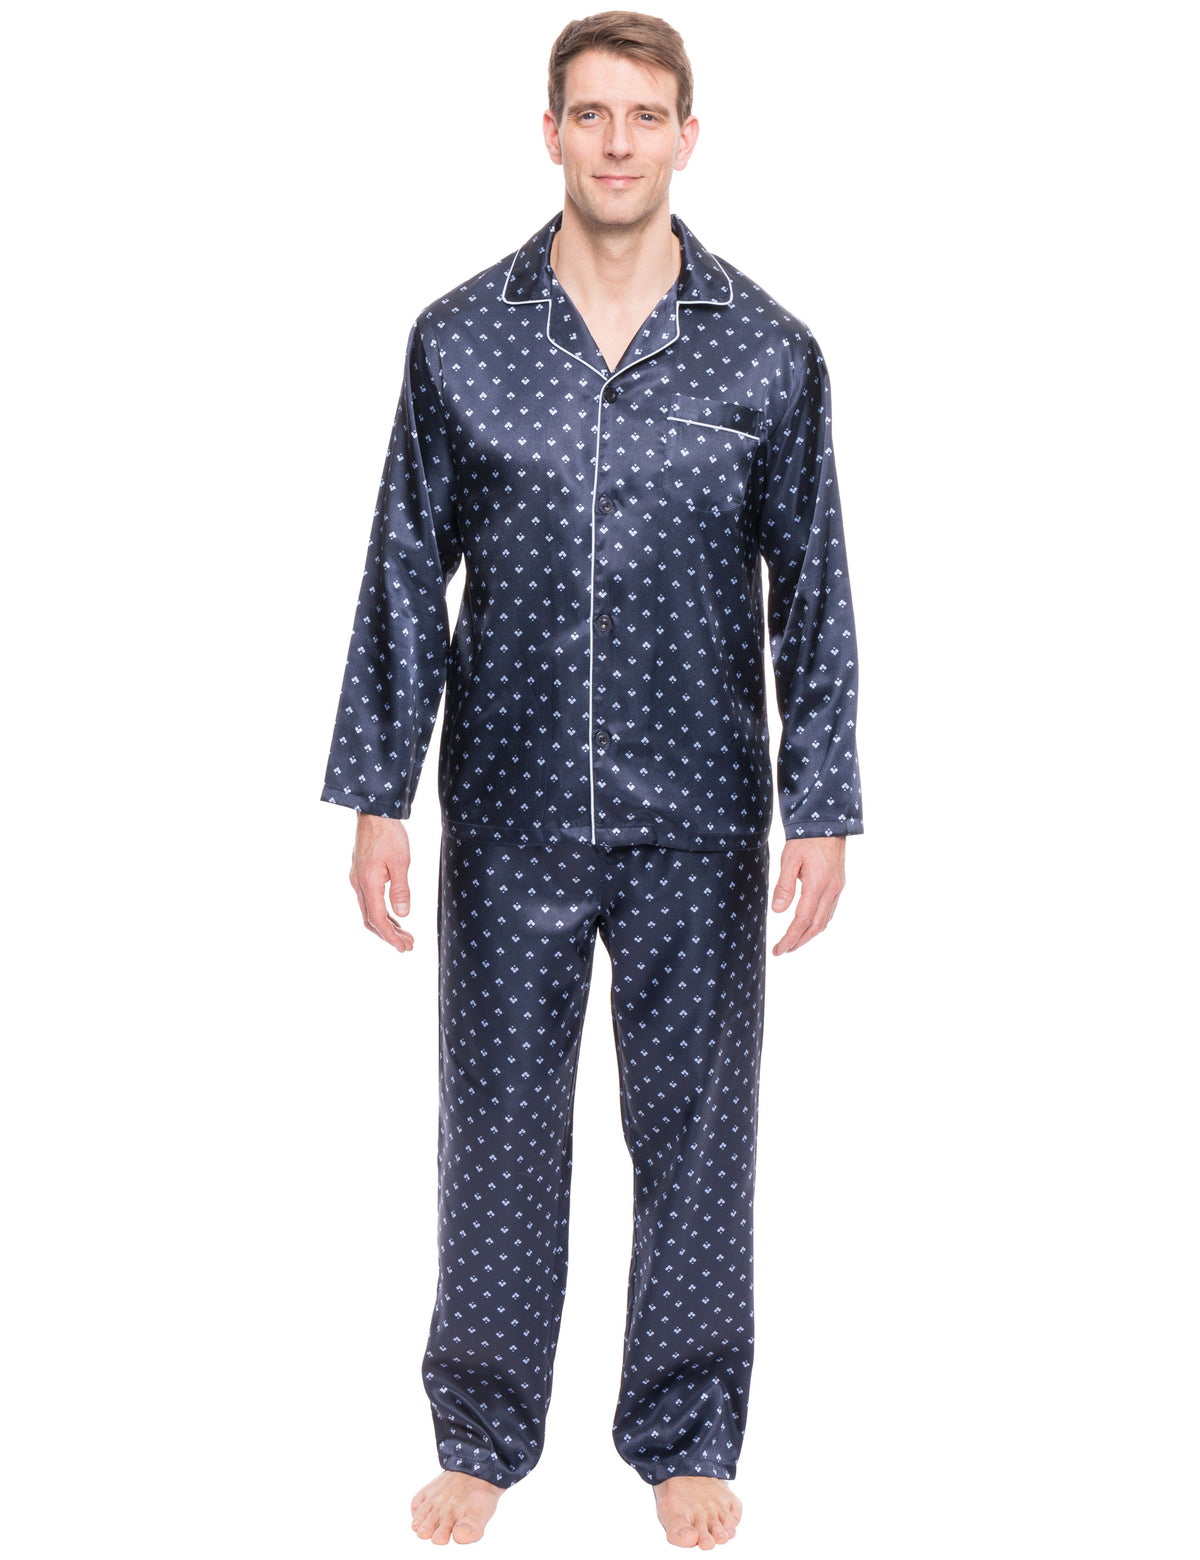 Mens Satin Sleepwear/Pajama Set - Diamond Squares Dark Blue